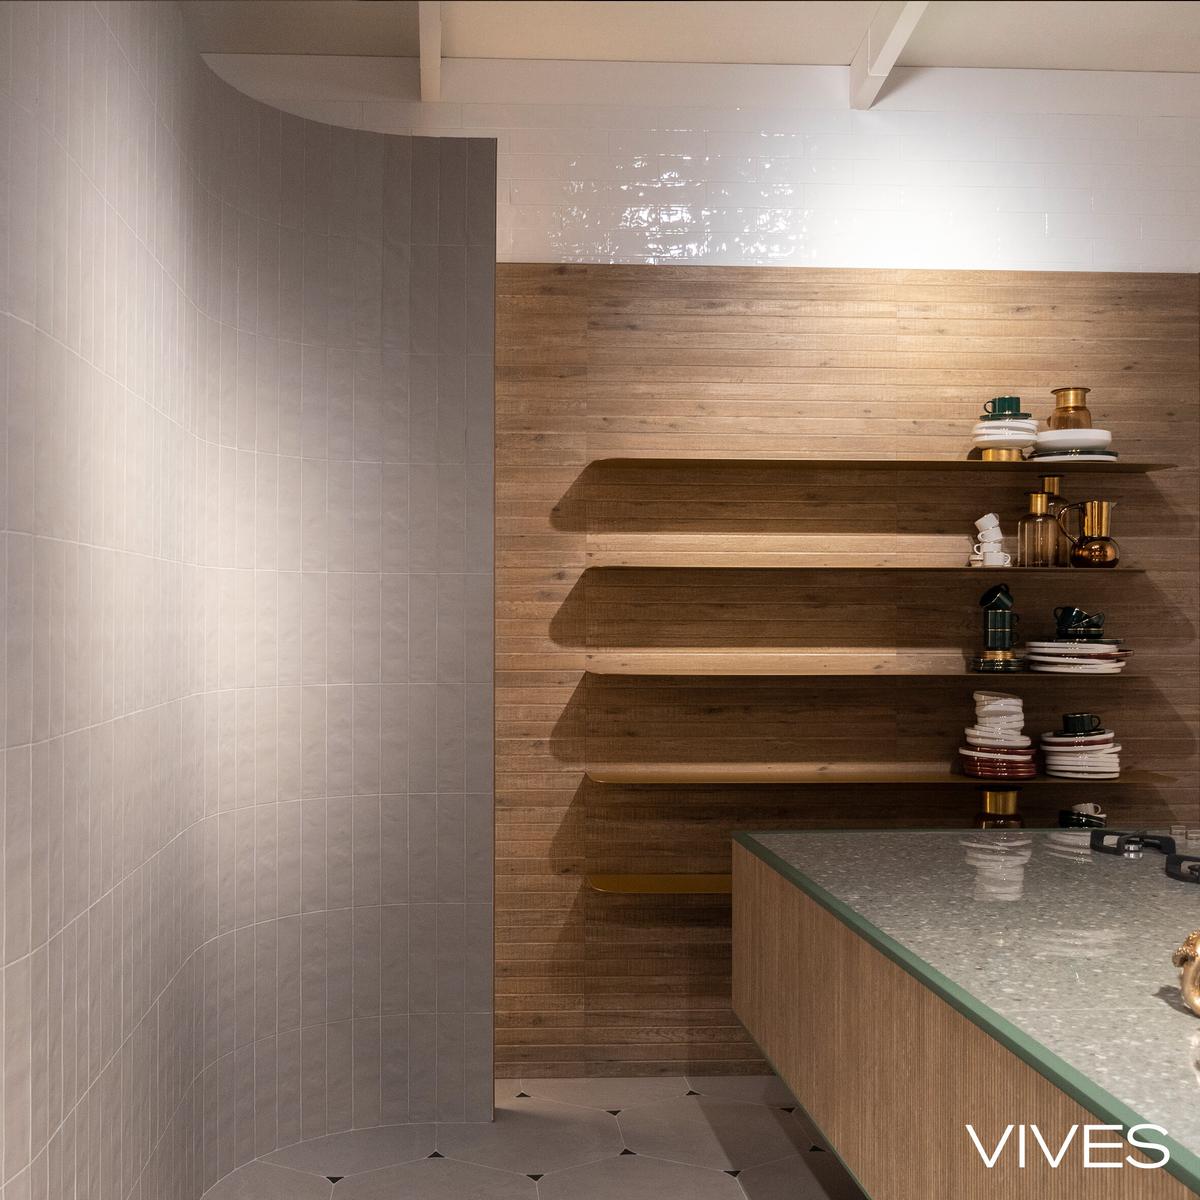 Carrelage imitation béton beige lisse sur une salle de bain avec étagères en bois et accessoires décoratifs